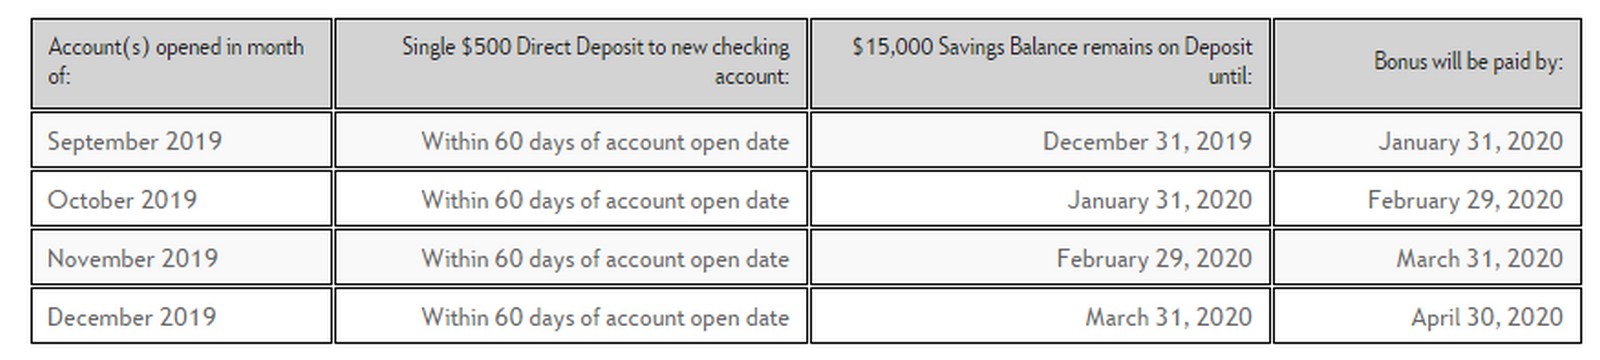 Bank Account bonuses Chart